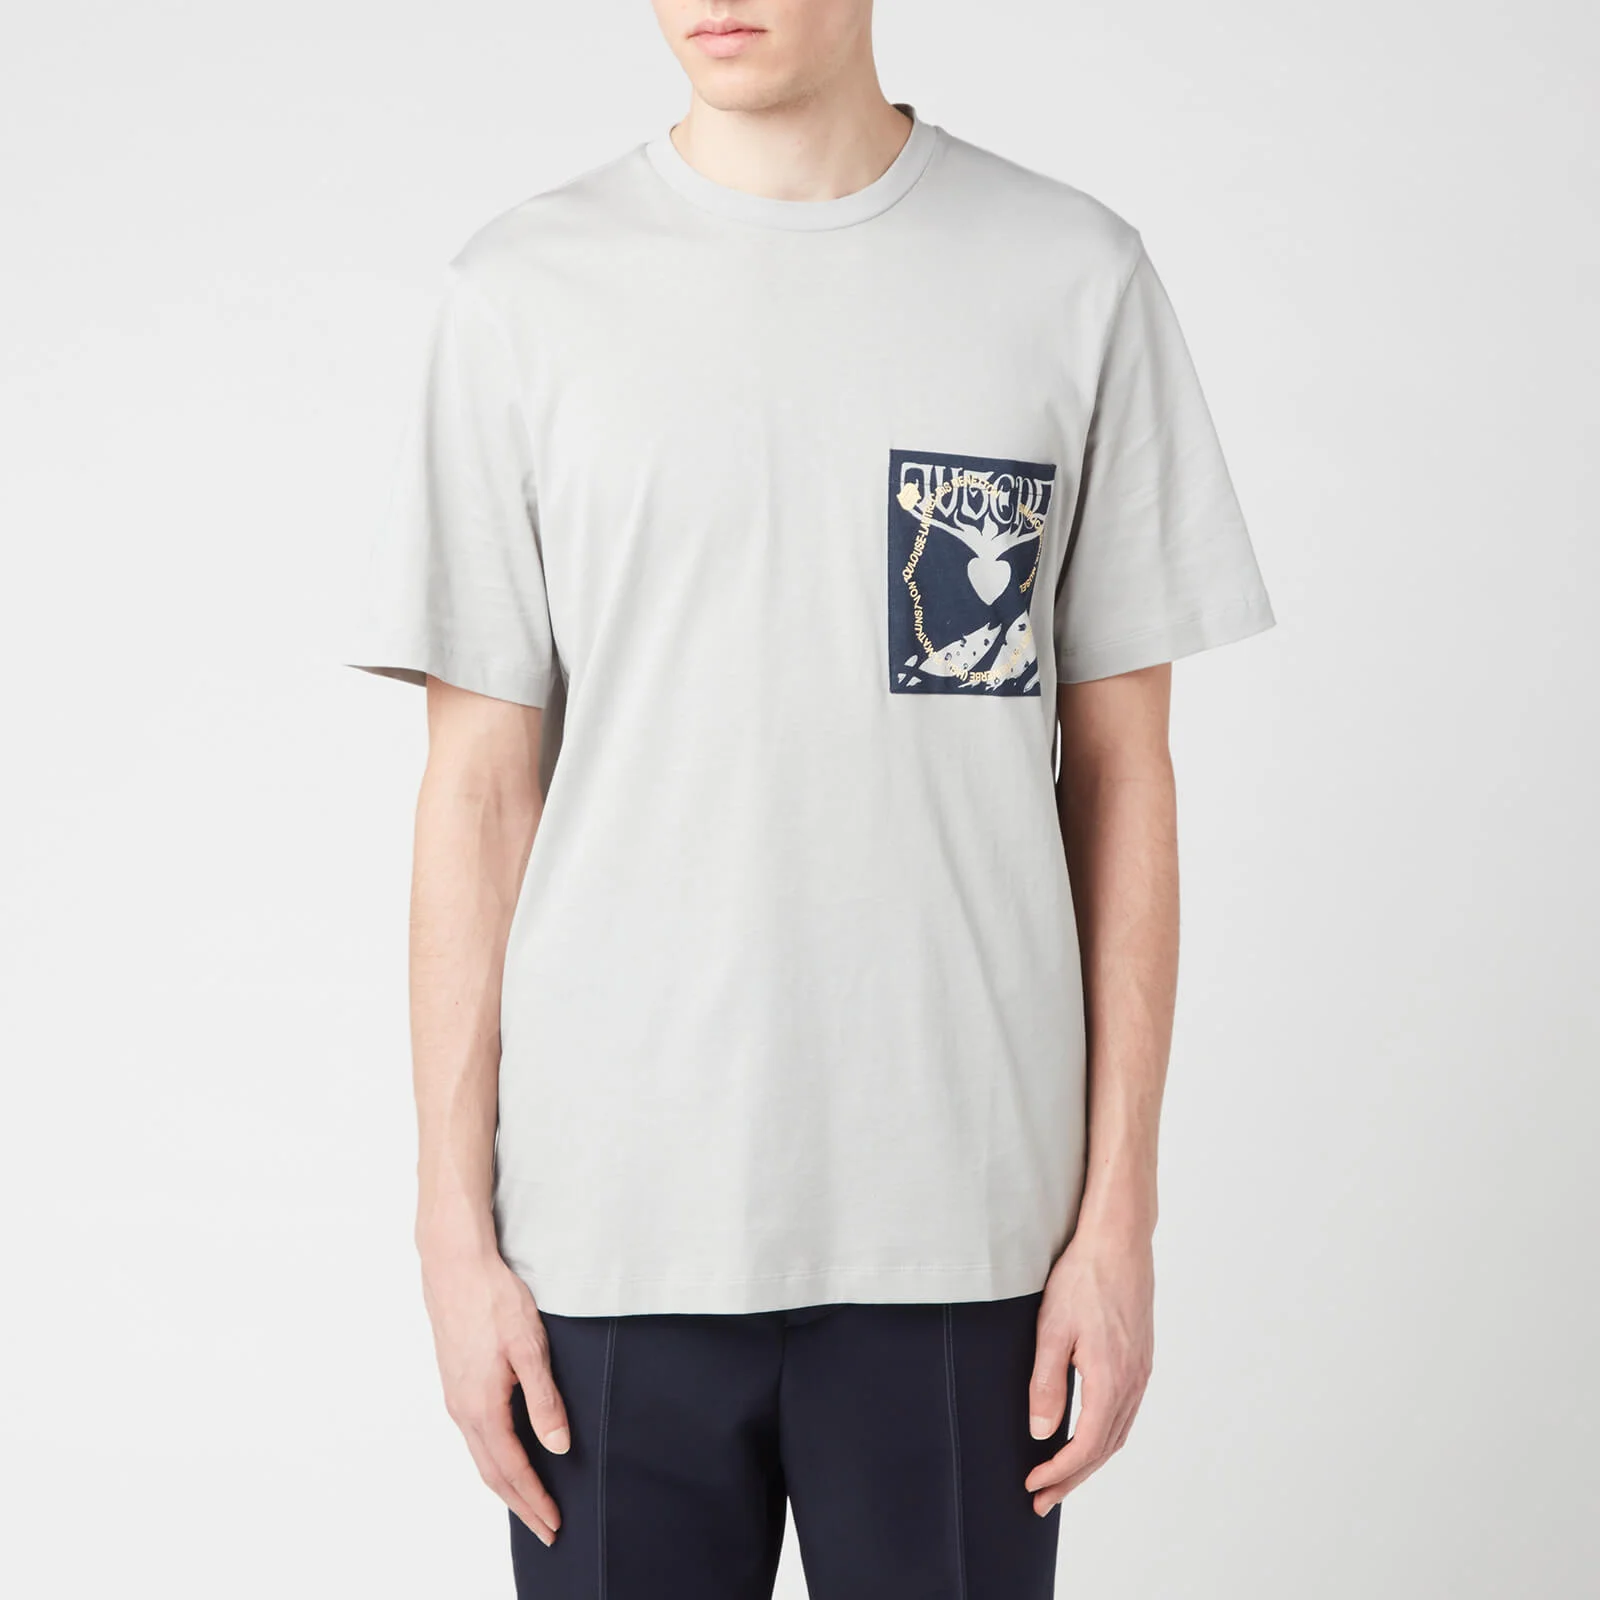 OAMC Men's Jugend T-Shirt - Light/Pastel Grey Image 1